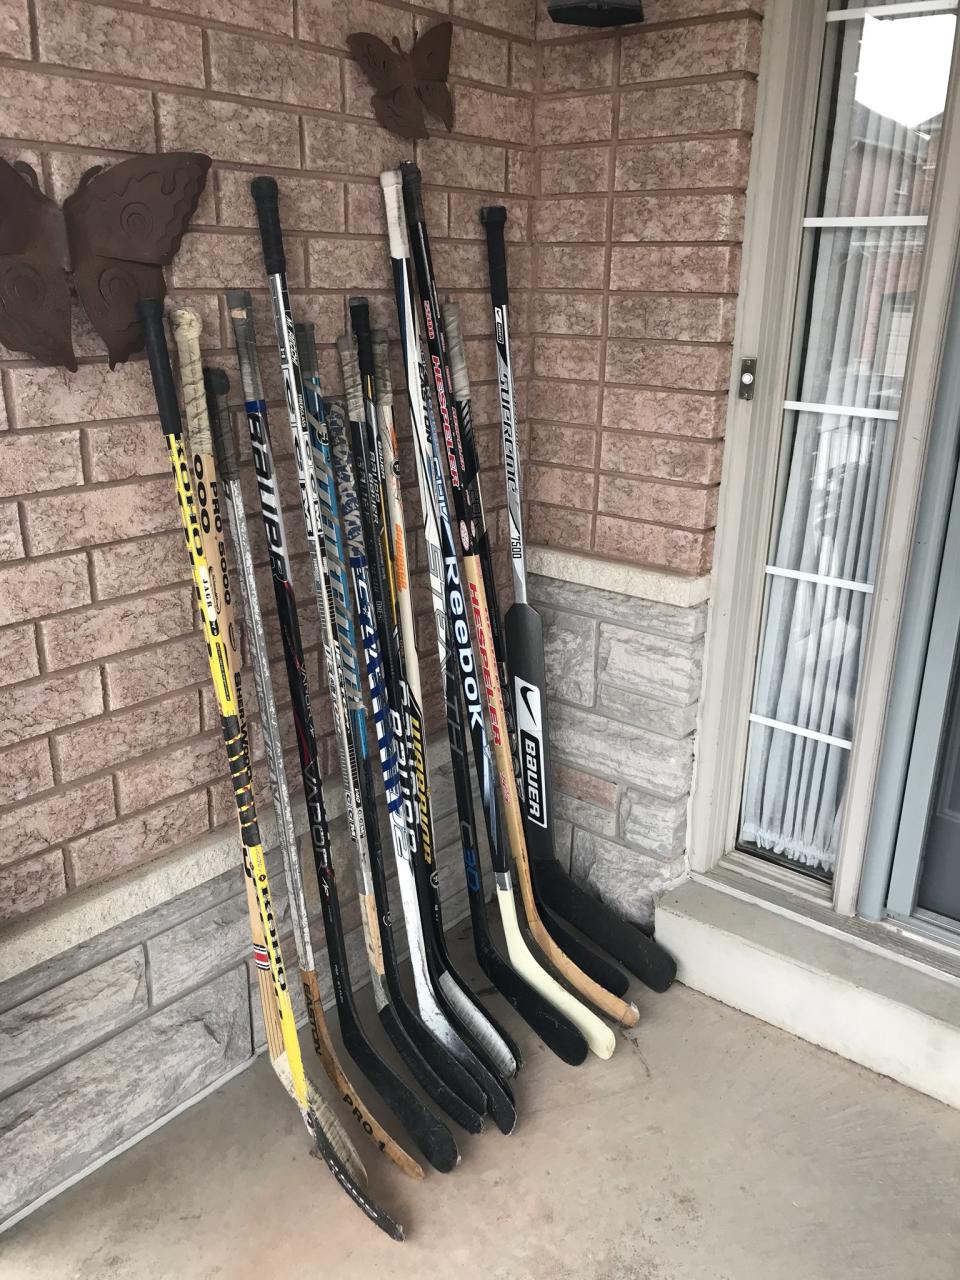 Bastones de hockey en honor de las víctimas